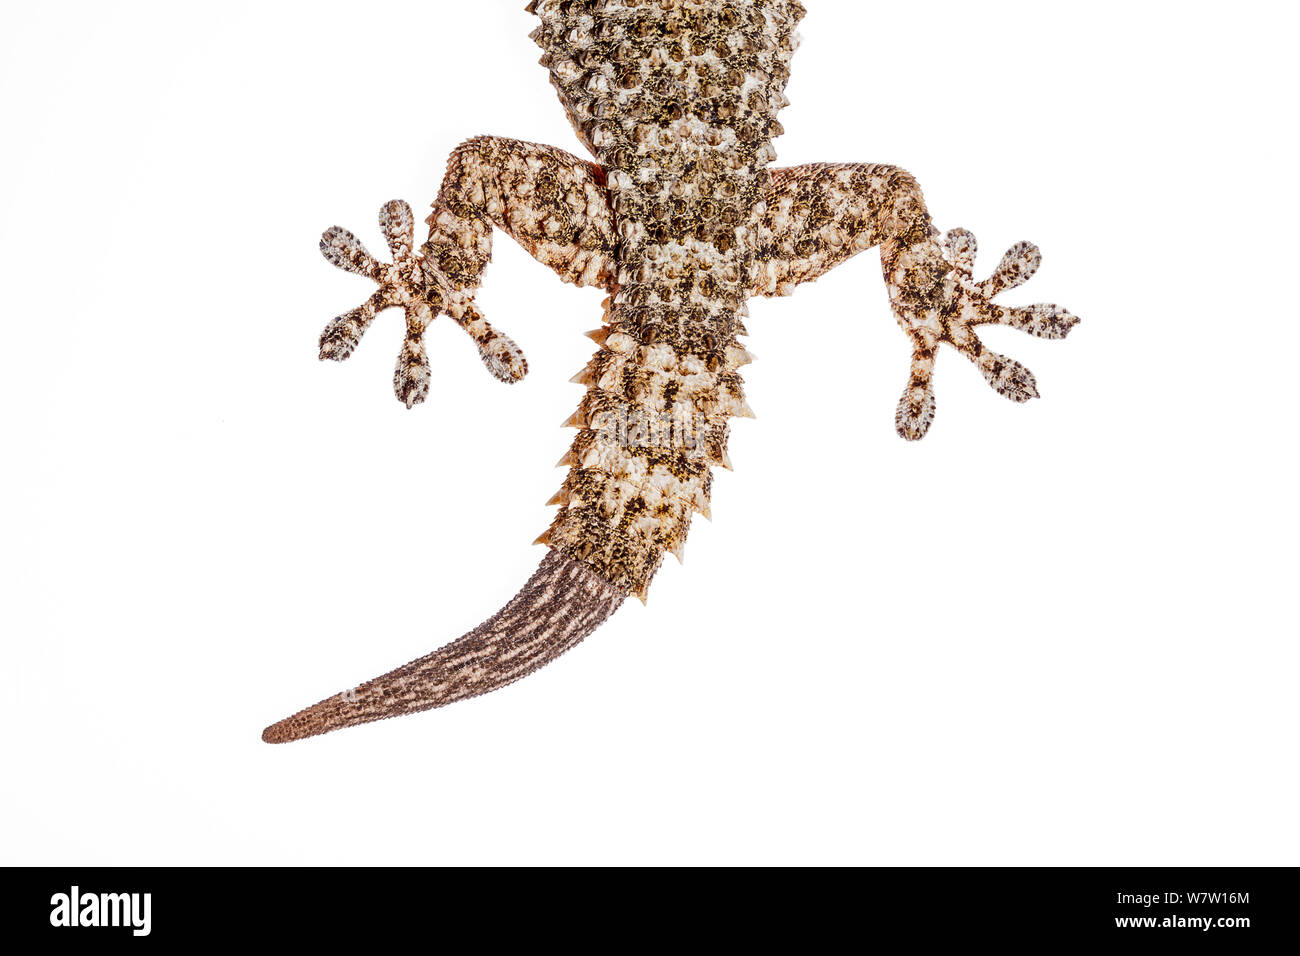 Regenerierten Schwanz des maurischen Wand Gecko (Tarentola mauritanica), Kreta, Griechenland, März. Meetyourneighbors.net Projekt. Stockfoto